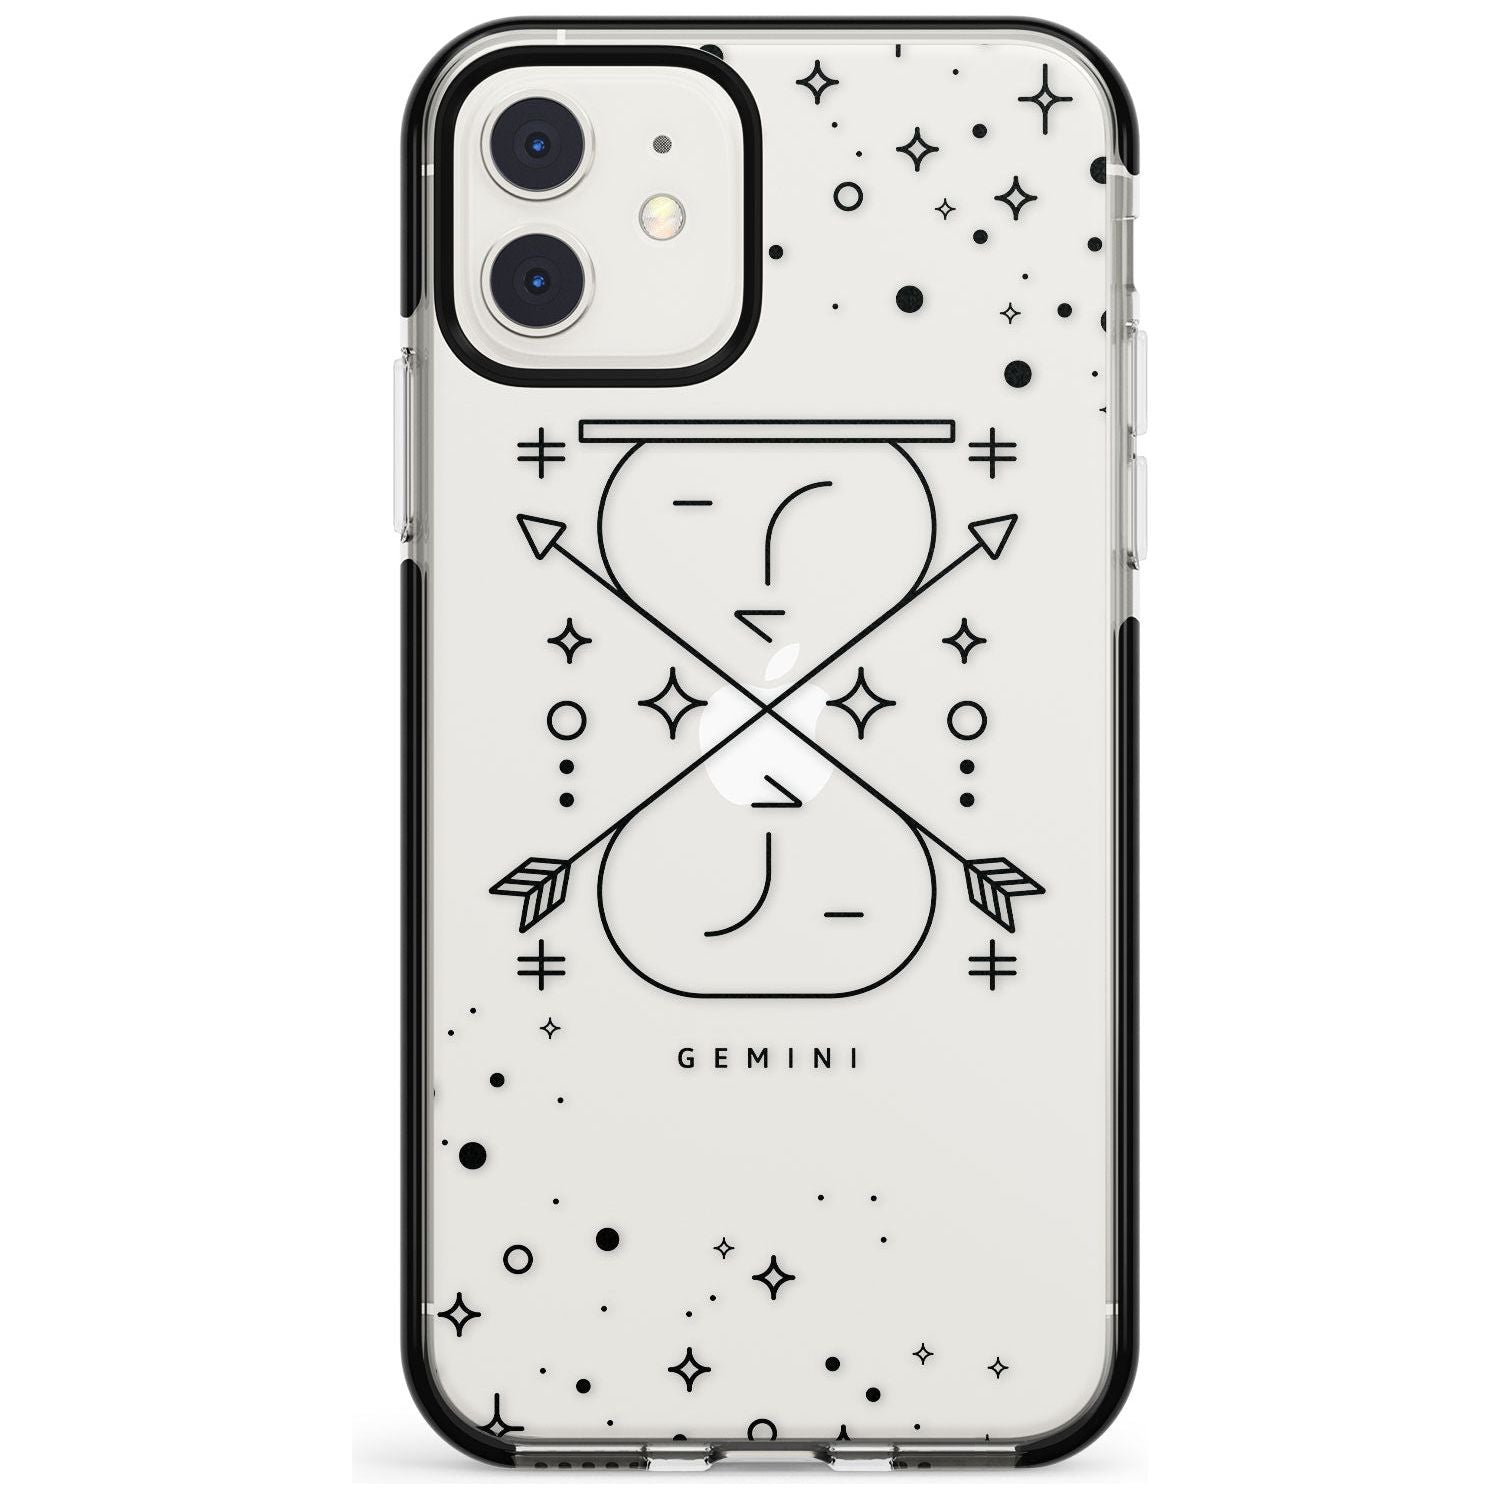 Gemini Emblem - Transparent Design Black Impact Phone Case for iPhone 11